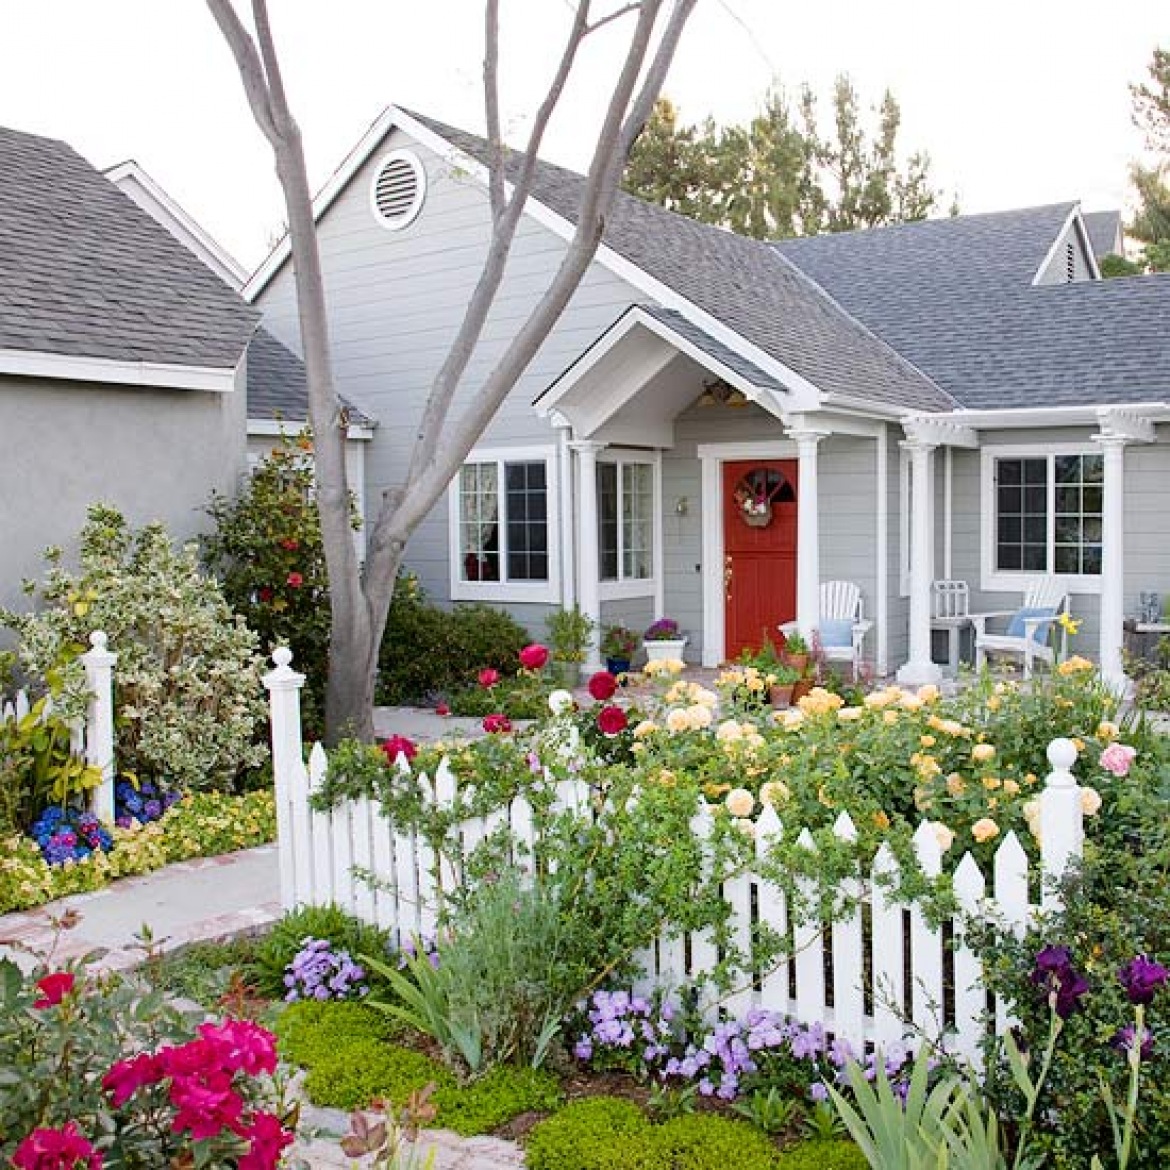 Цветник около дома. Цветник перед домом. Красивый палисадник. Красивый цветник перед домом. Палисадн к перед домрм.